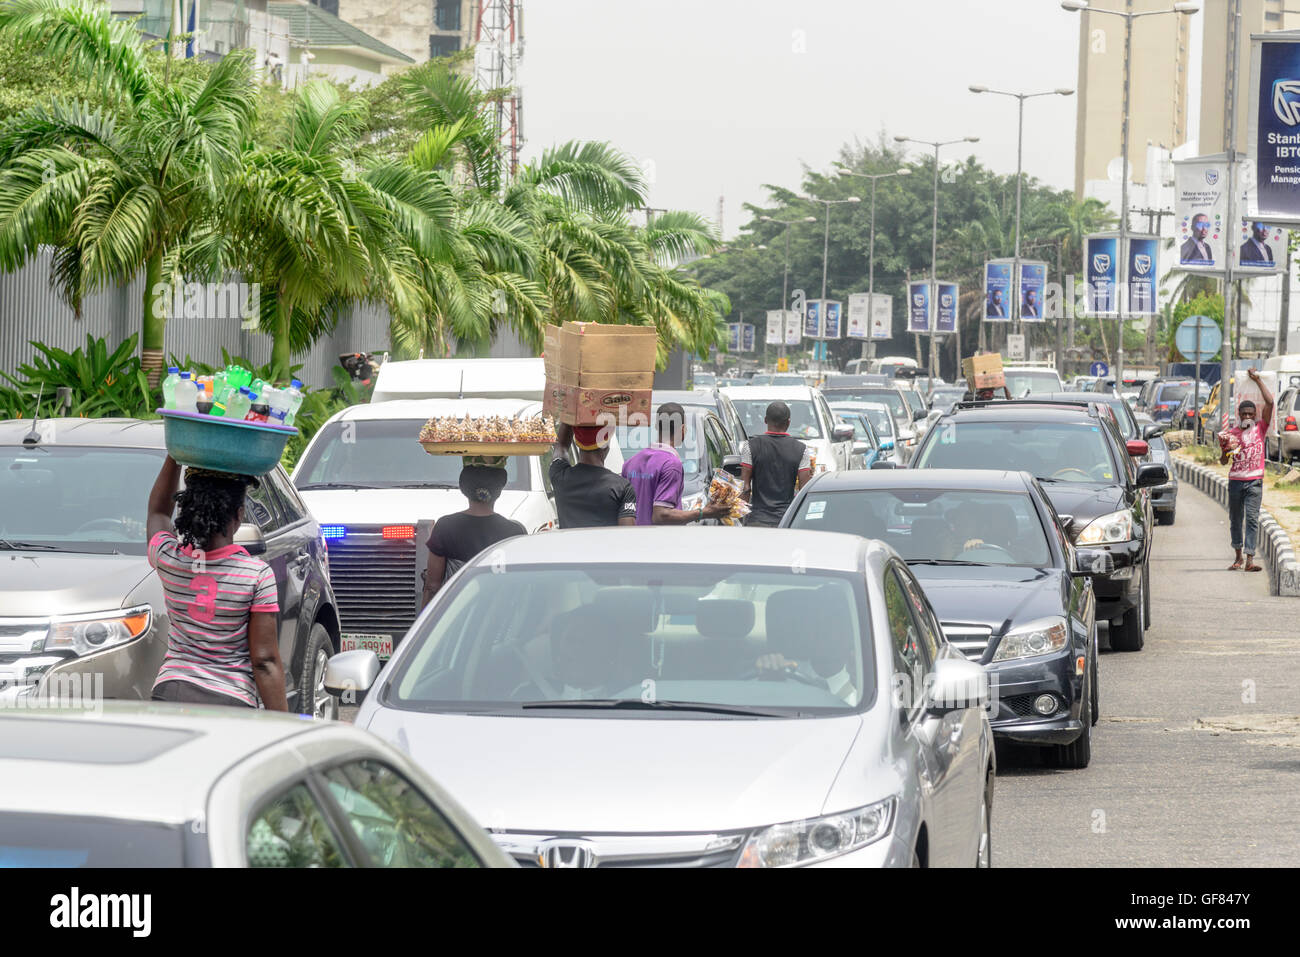 La sauvette plis leurs marchandises dans le trafic, Victoria Island, Lagos, Nigeria, Afrique de l'Ouest Banque D'Images